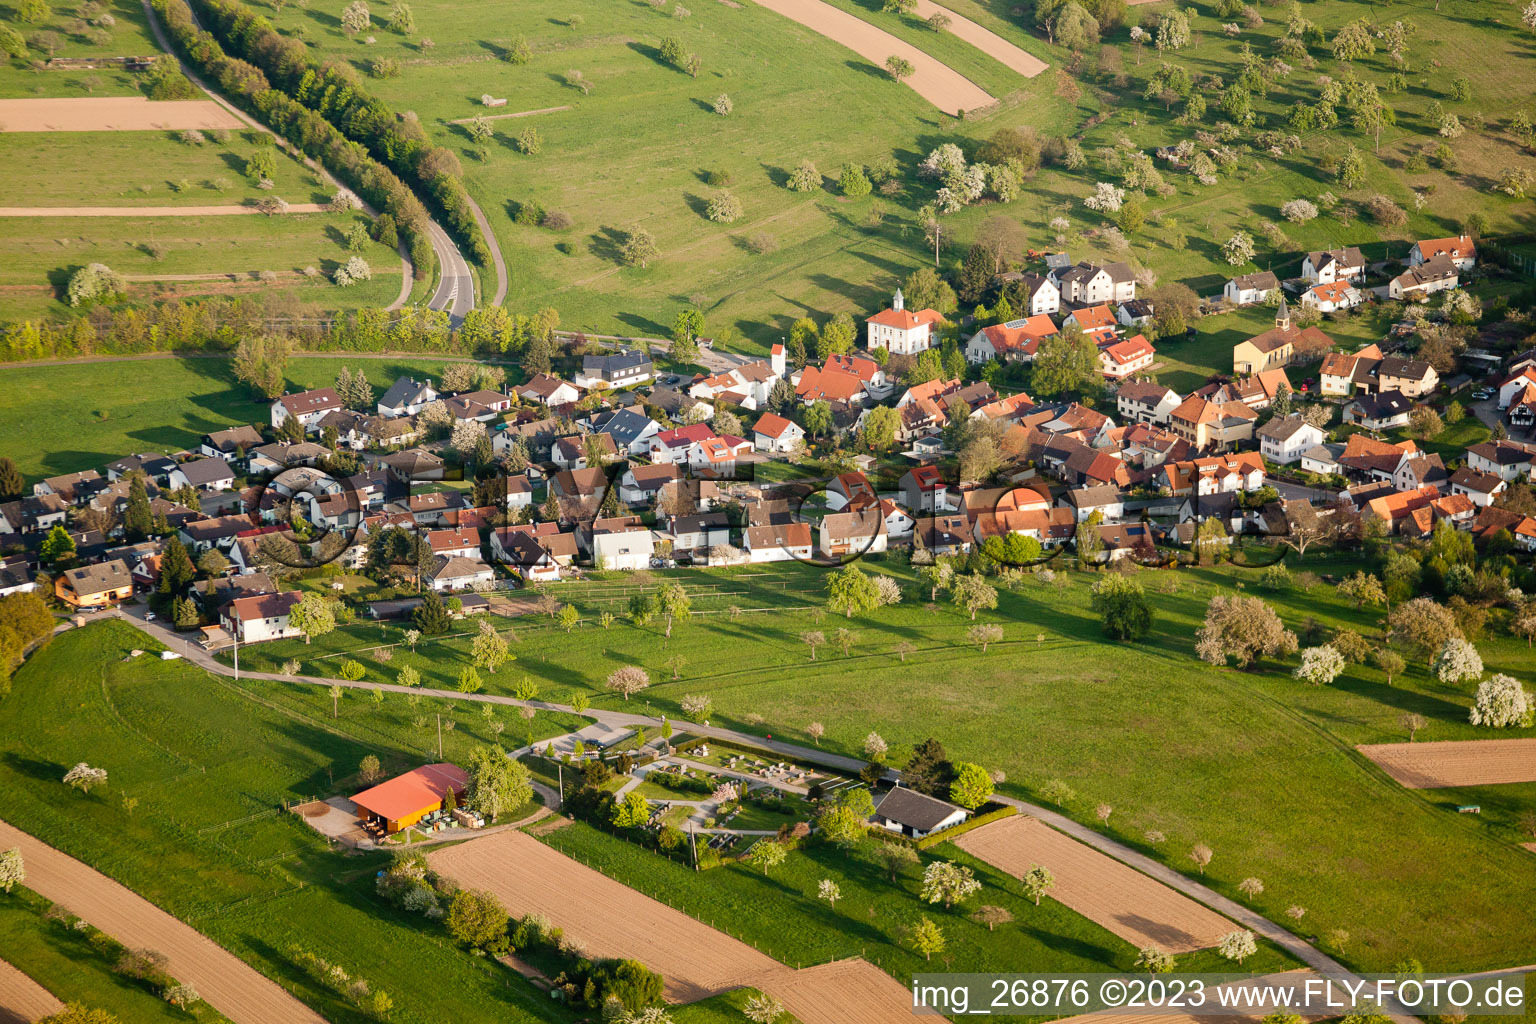 Ortsteil Schluttenbach in Ettlingen im Bundesland Baden-Württemberg, Deutschland von der Drohne aus gesehen